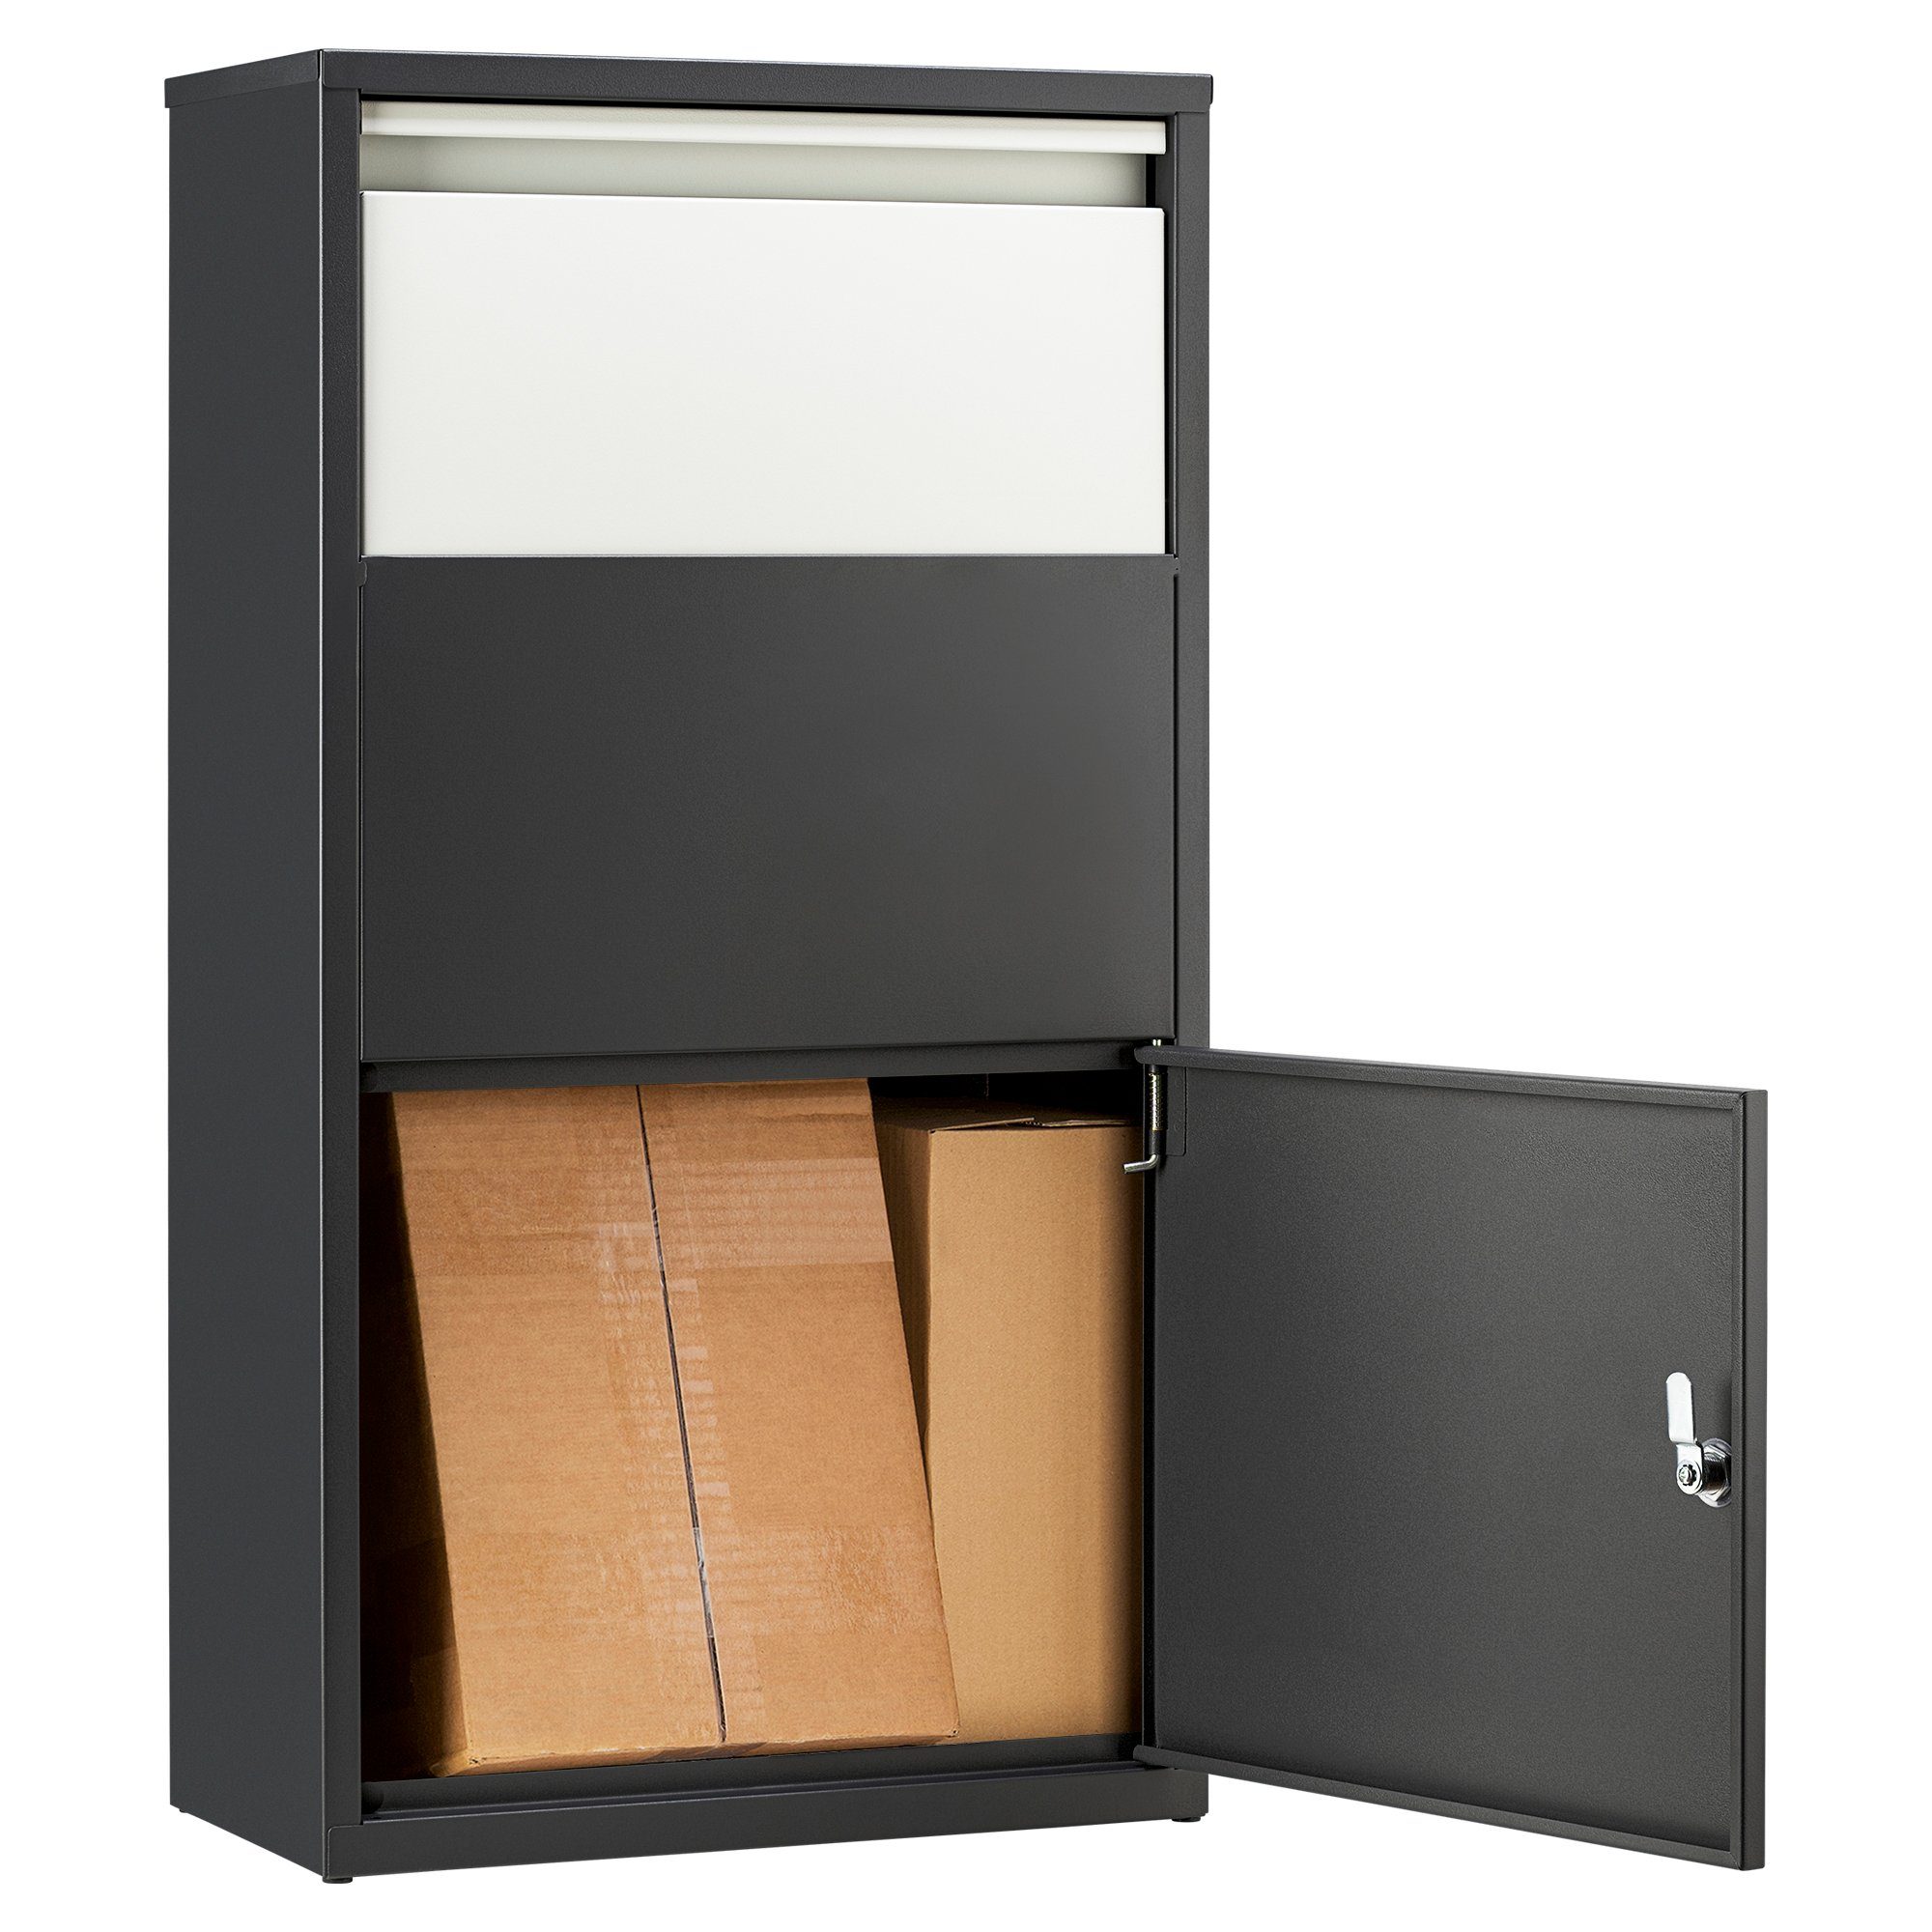 "One" Pulverbeschichtet inkl. Haussmann Schlüssel Paketbriefbox - Paketbriefkasten grau/weiß 4